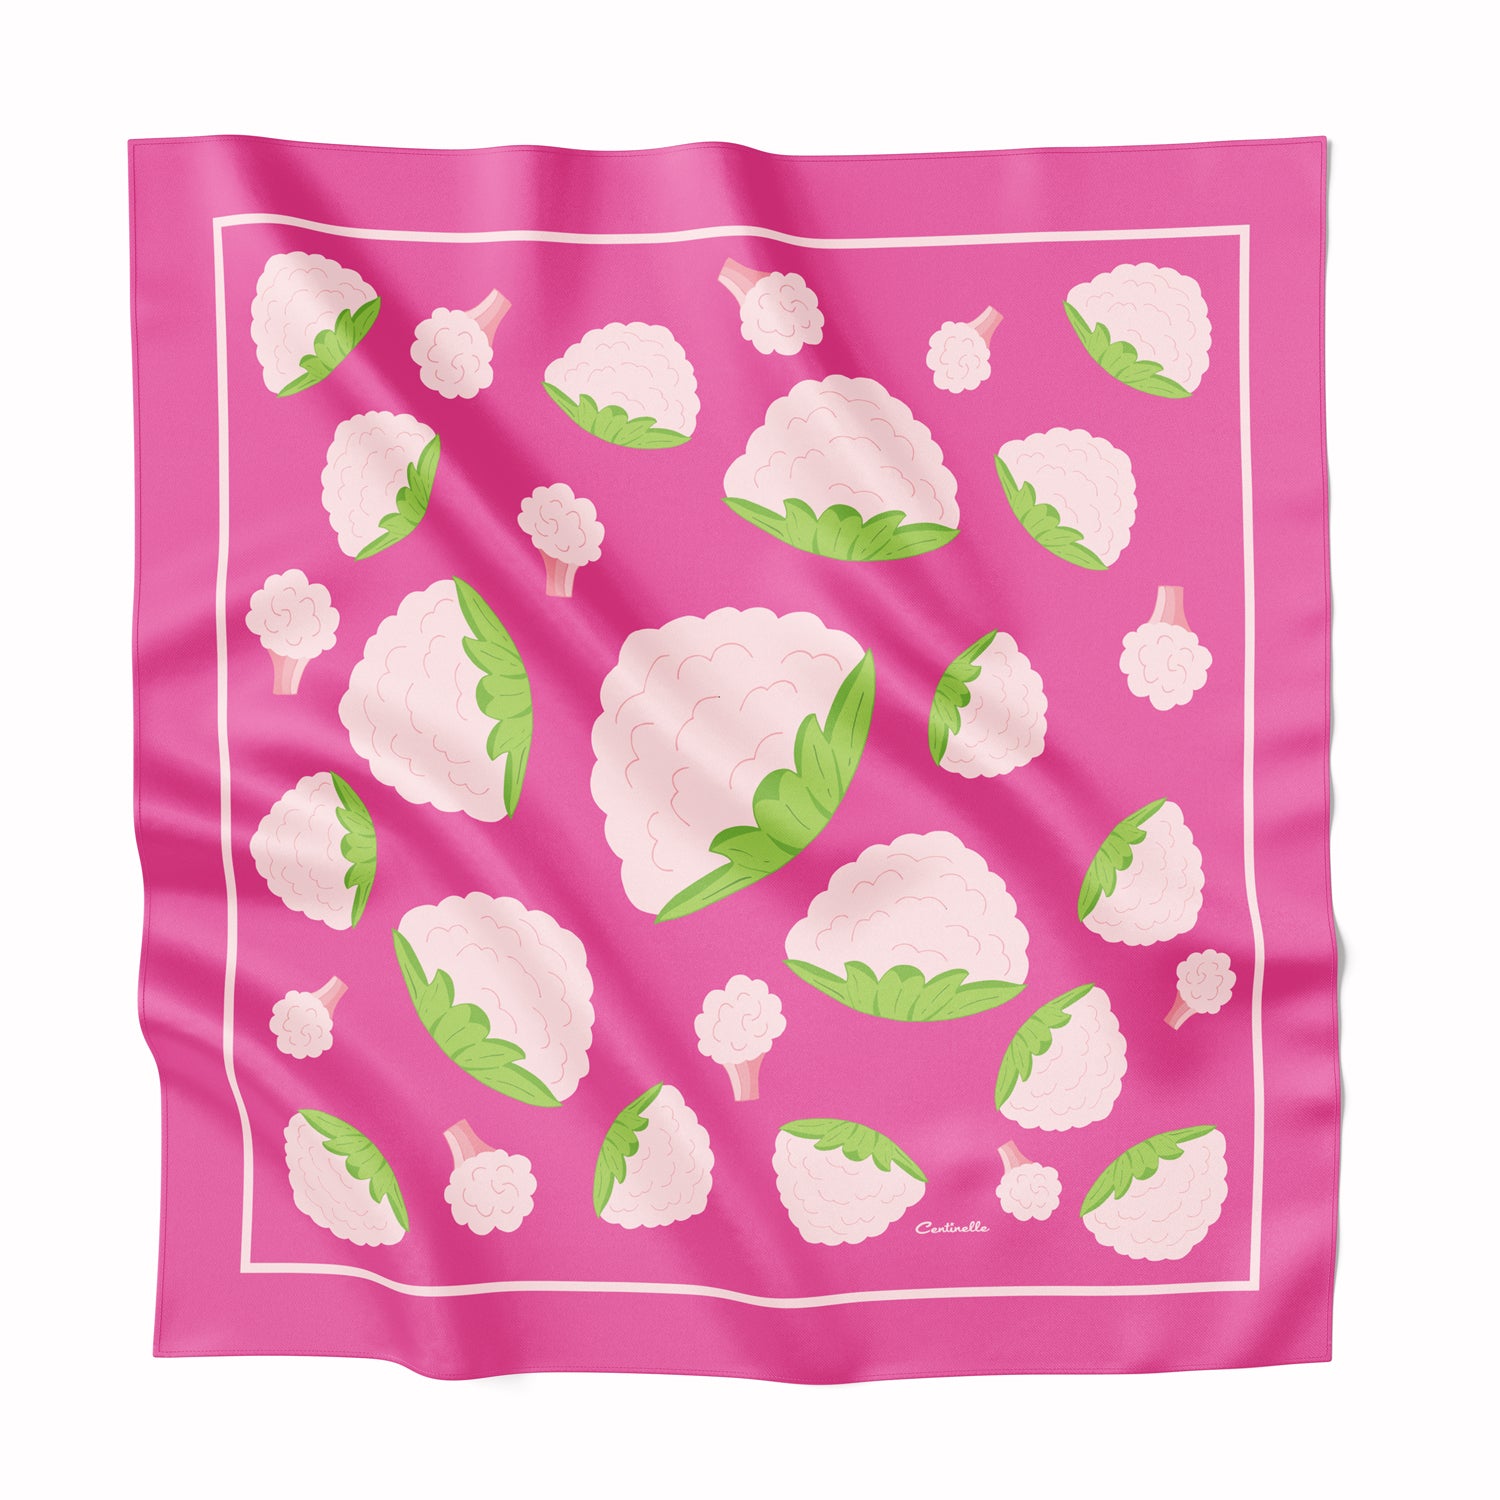 Hot Pink silk scarf with pink cauliflower.